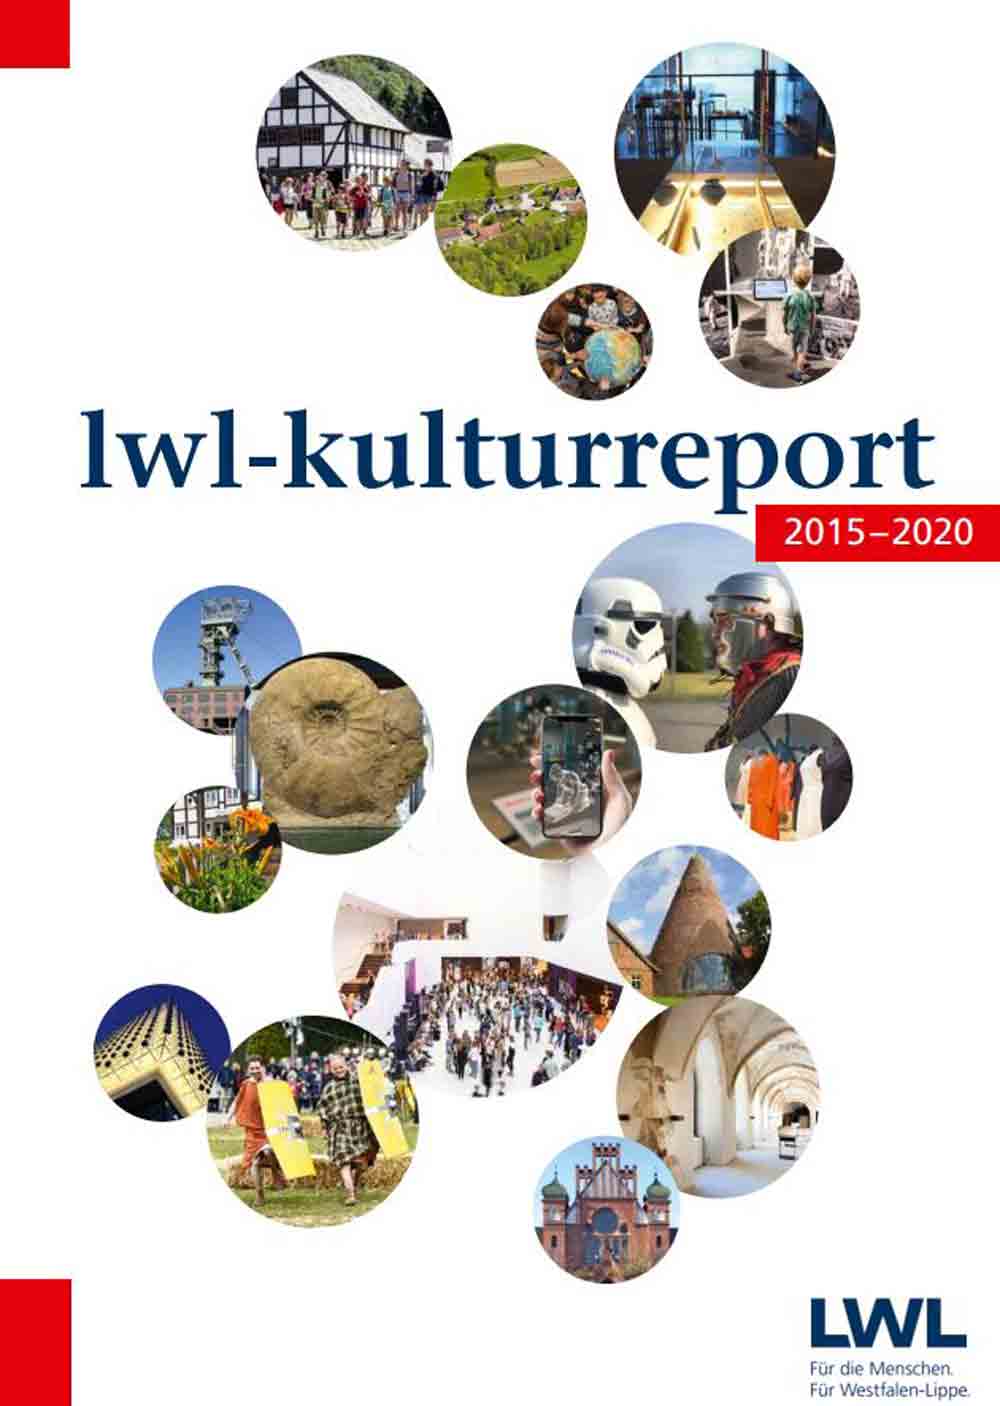 Kulturreport 2015 bis 2020 des LWL erschienen